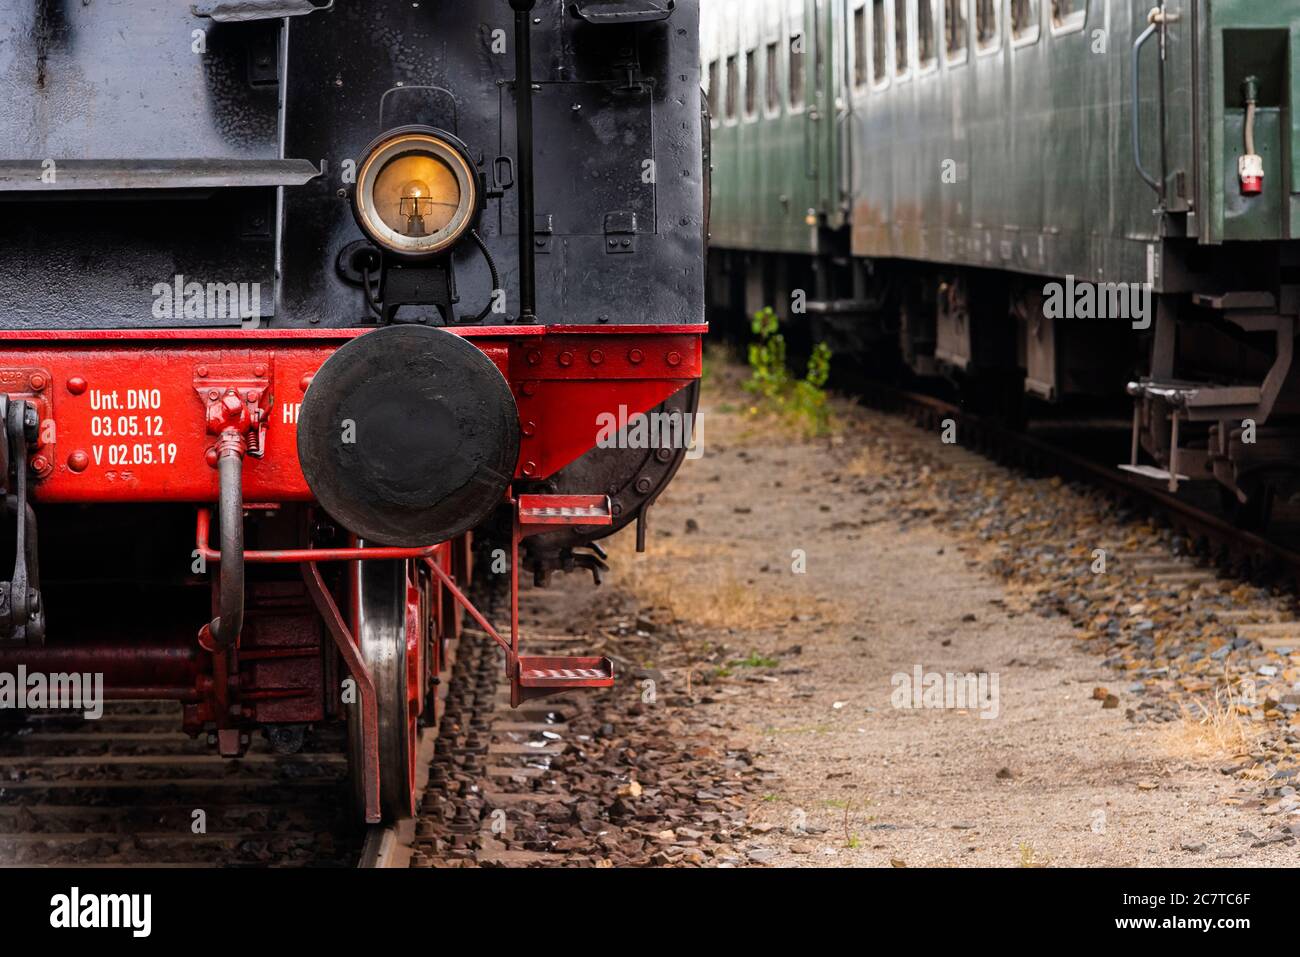 Vorderseite einer alten Dampflokomotive, Details einer Dampflokomotive,  Scheinwerfer, Puffer, Stoßstange, Puffer Stockfotografie - Alamy